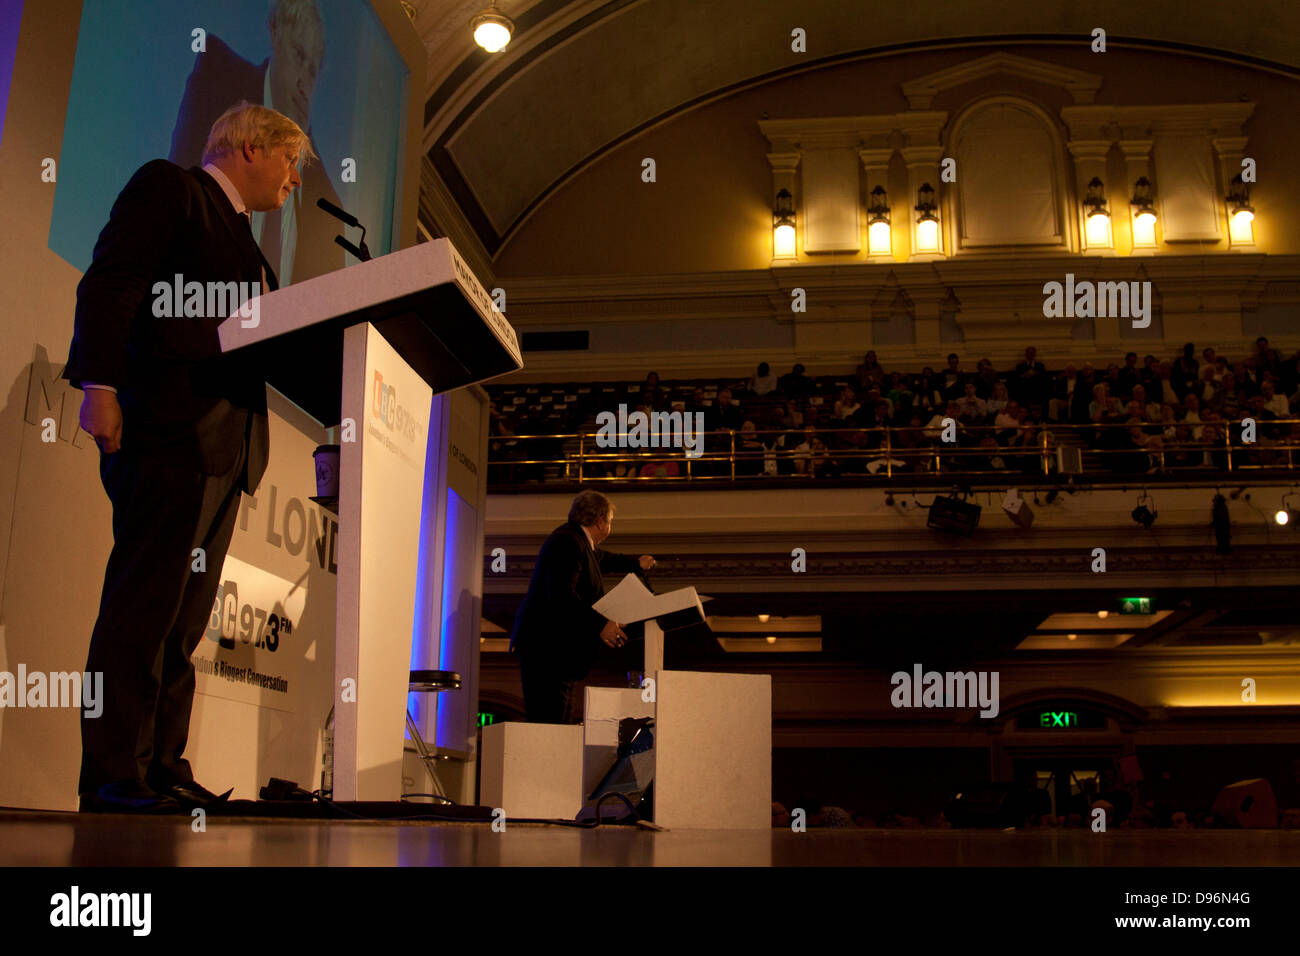 12 juin 2013. London UK. Maire Boris Johnson répond aux questions de l'auditoire à la Central Methodist Hall pendant le débat de Londres sur les problèmes qui affectent les Londoniens Banque D'Images